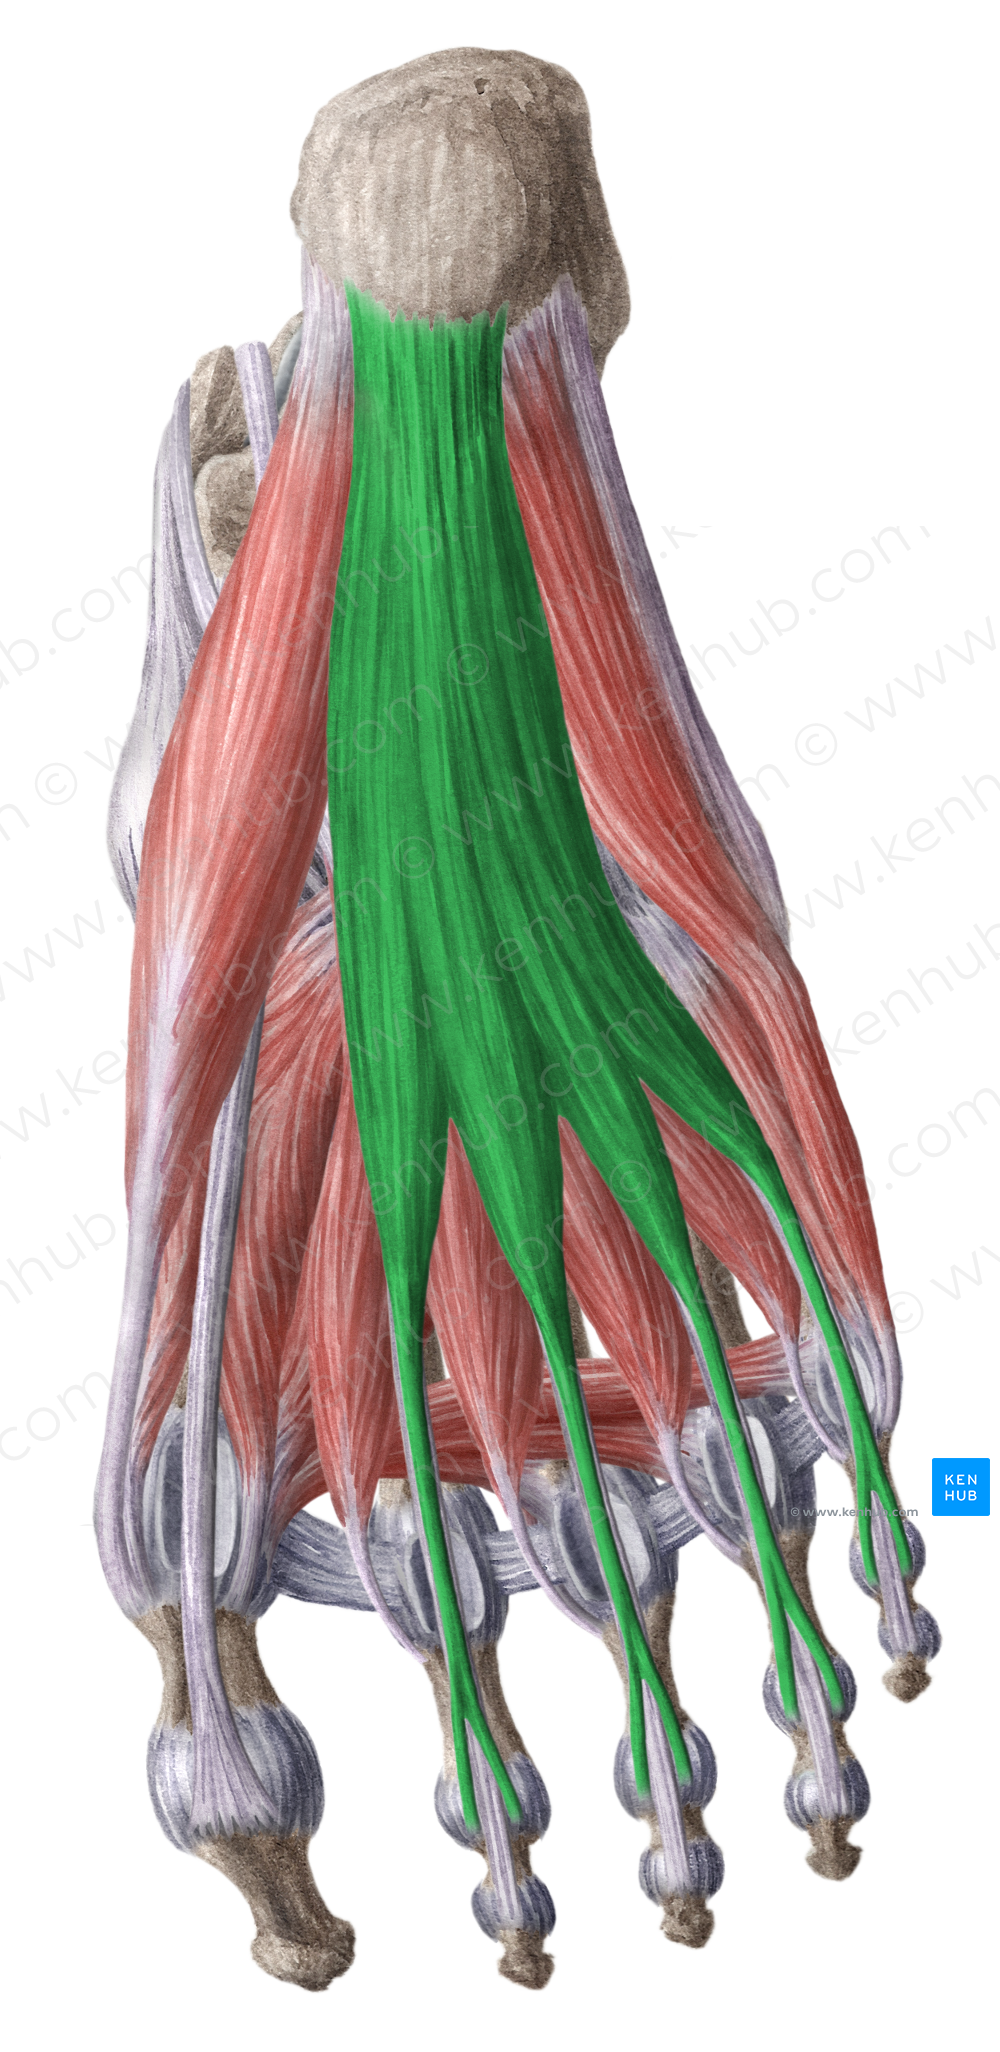 Flexor digitorum brevis muscle (#5363)